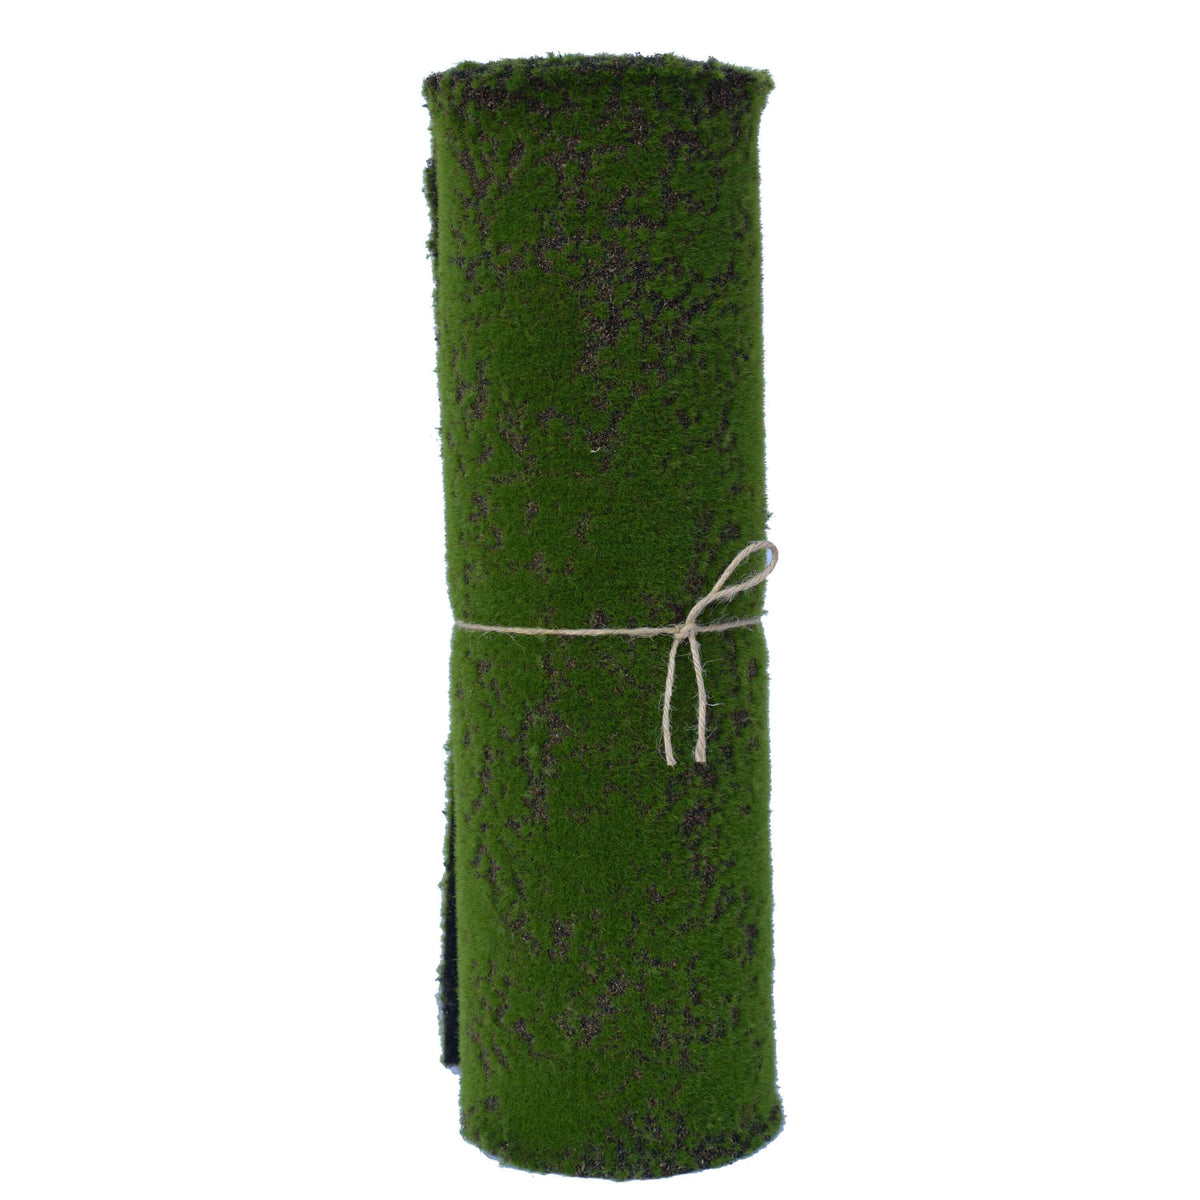 Artificial Green Moss Roll, Faux Moss